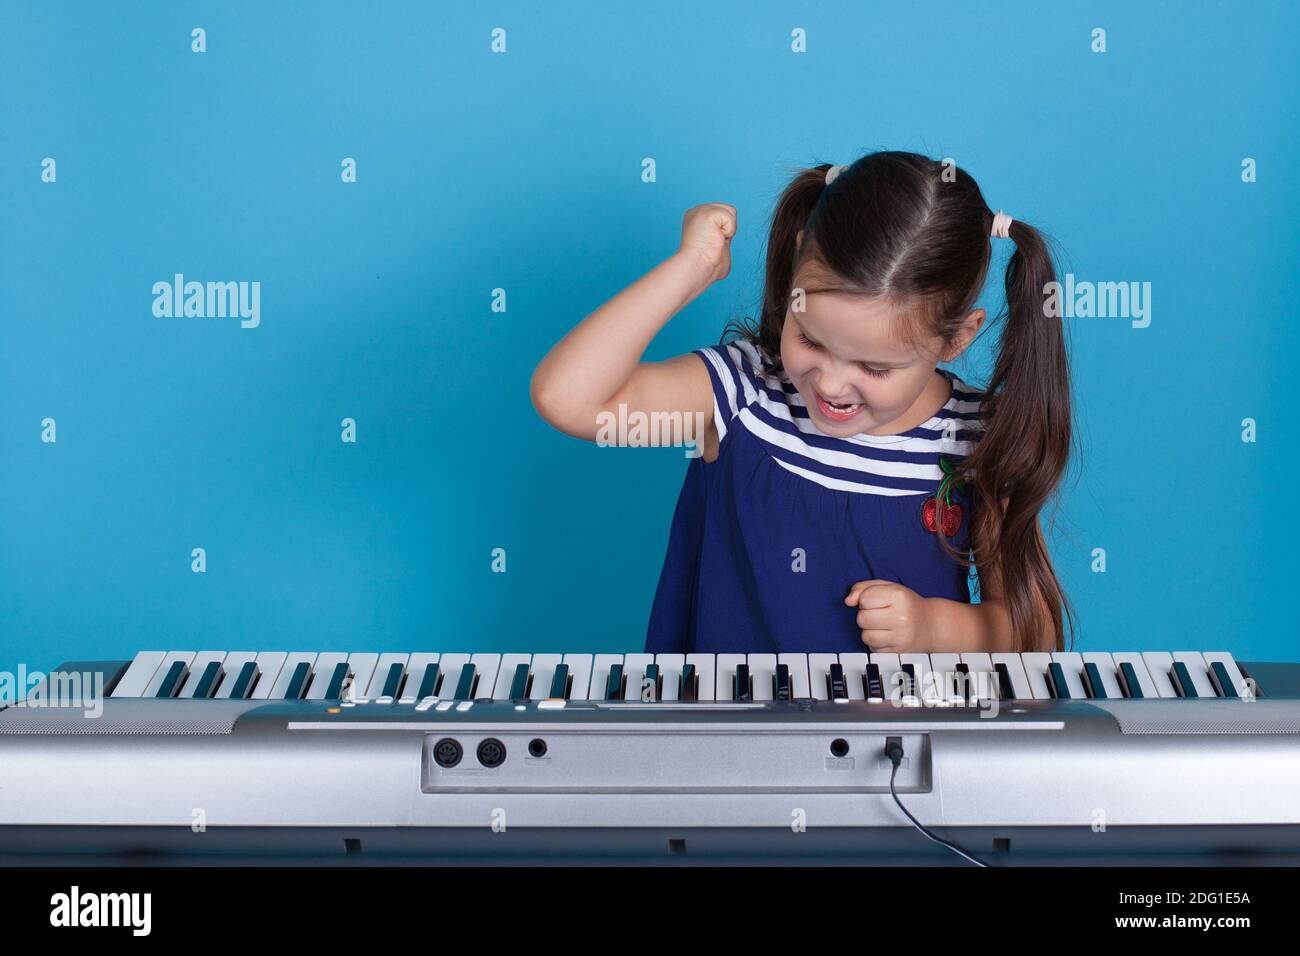 primo piano bambina in un vestito blu batte i suoi pugni sui tasti del sintetizzatore con rabbia e non vuole imparare, isolato su uno sfondo blu Foto Stock